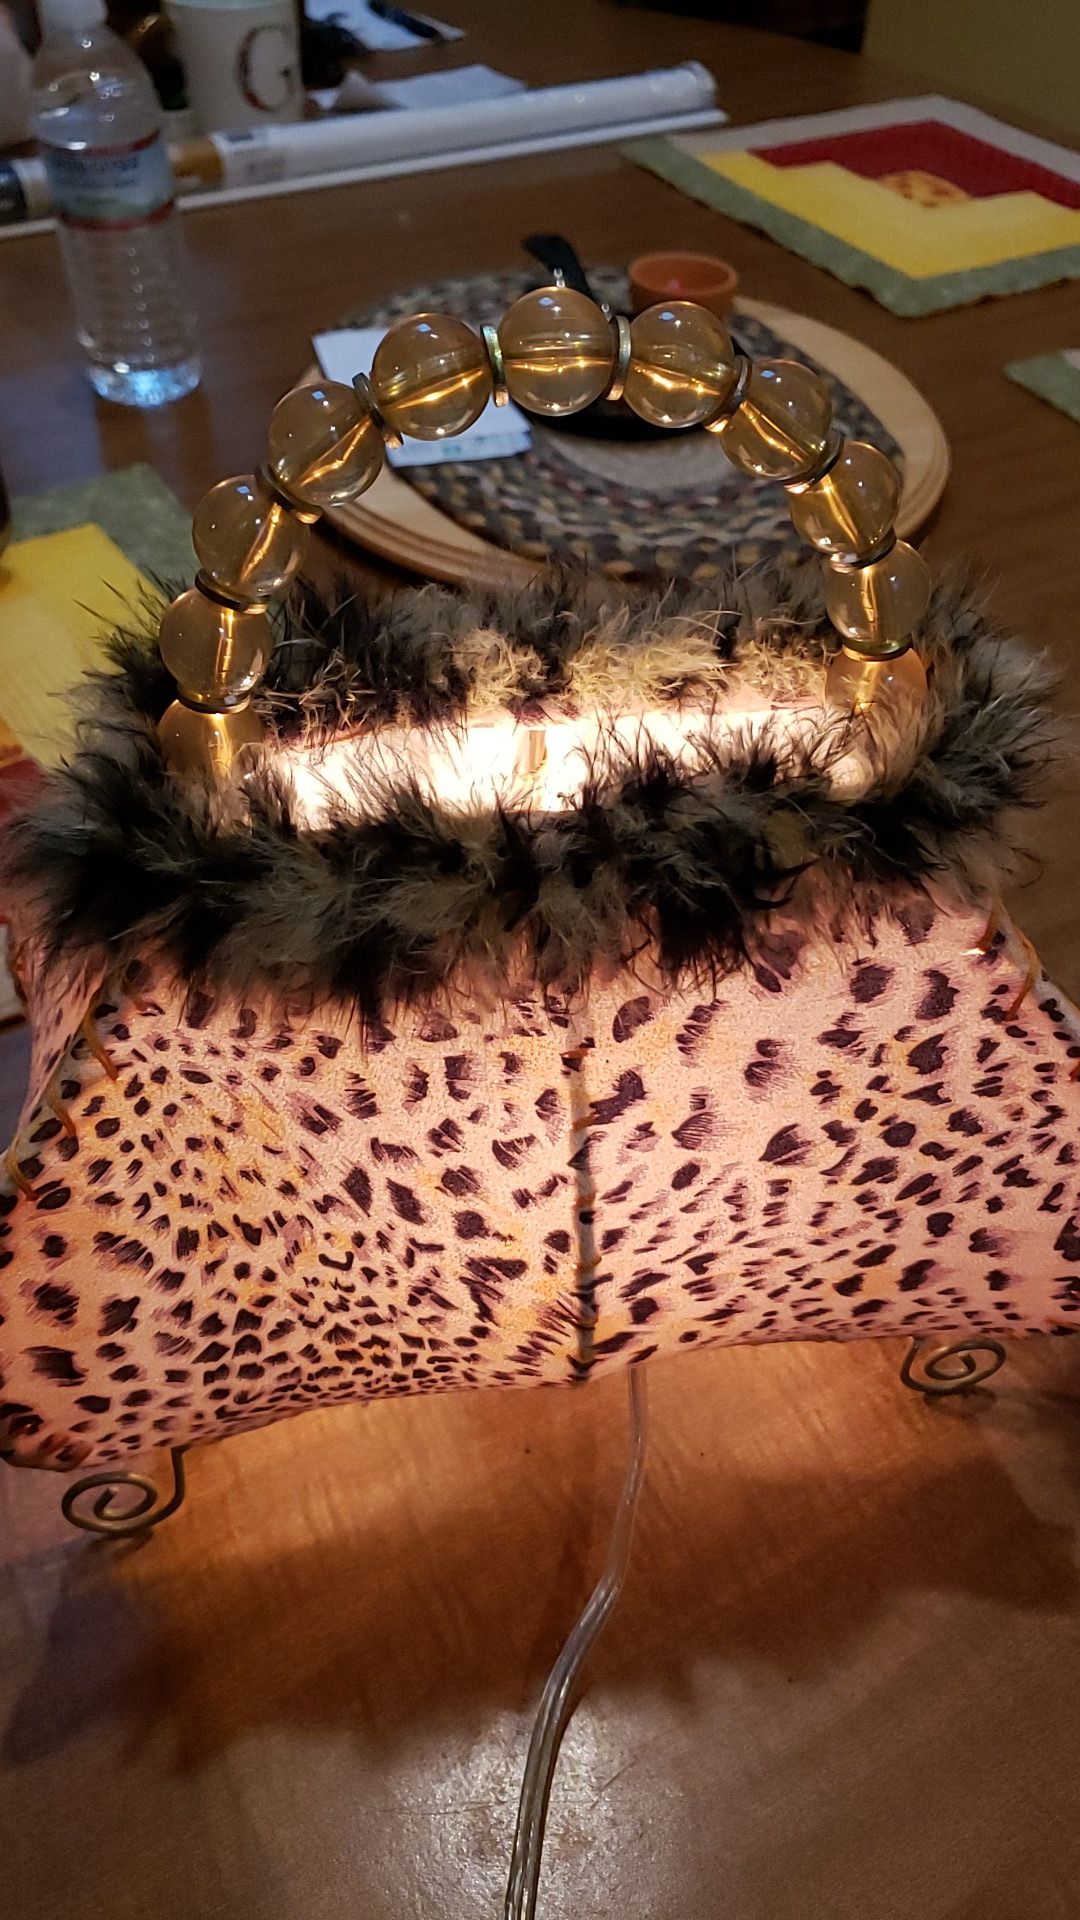 Leopard purse lamp he in nightlight